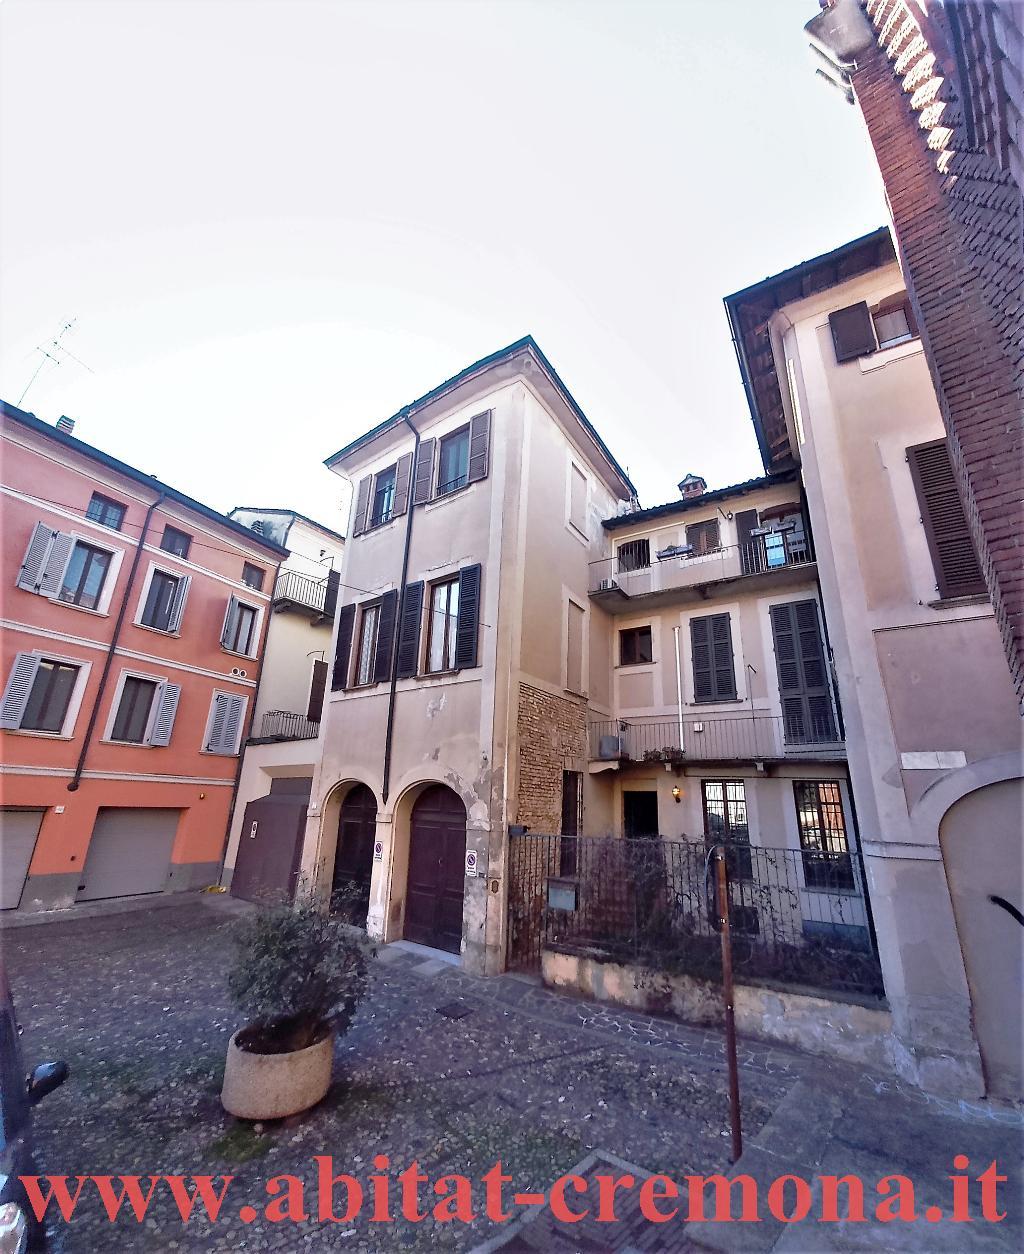 Trilocale in vendita a Cremona - Zona: Centro storico